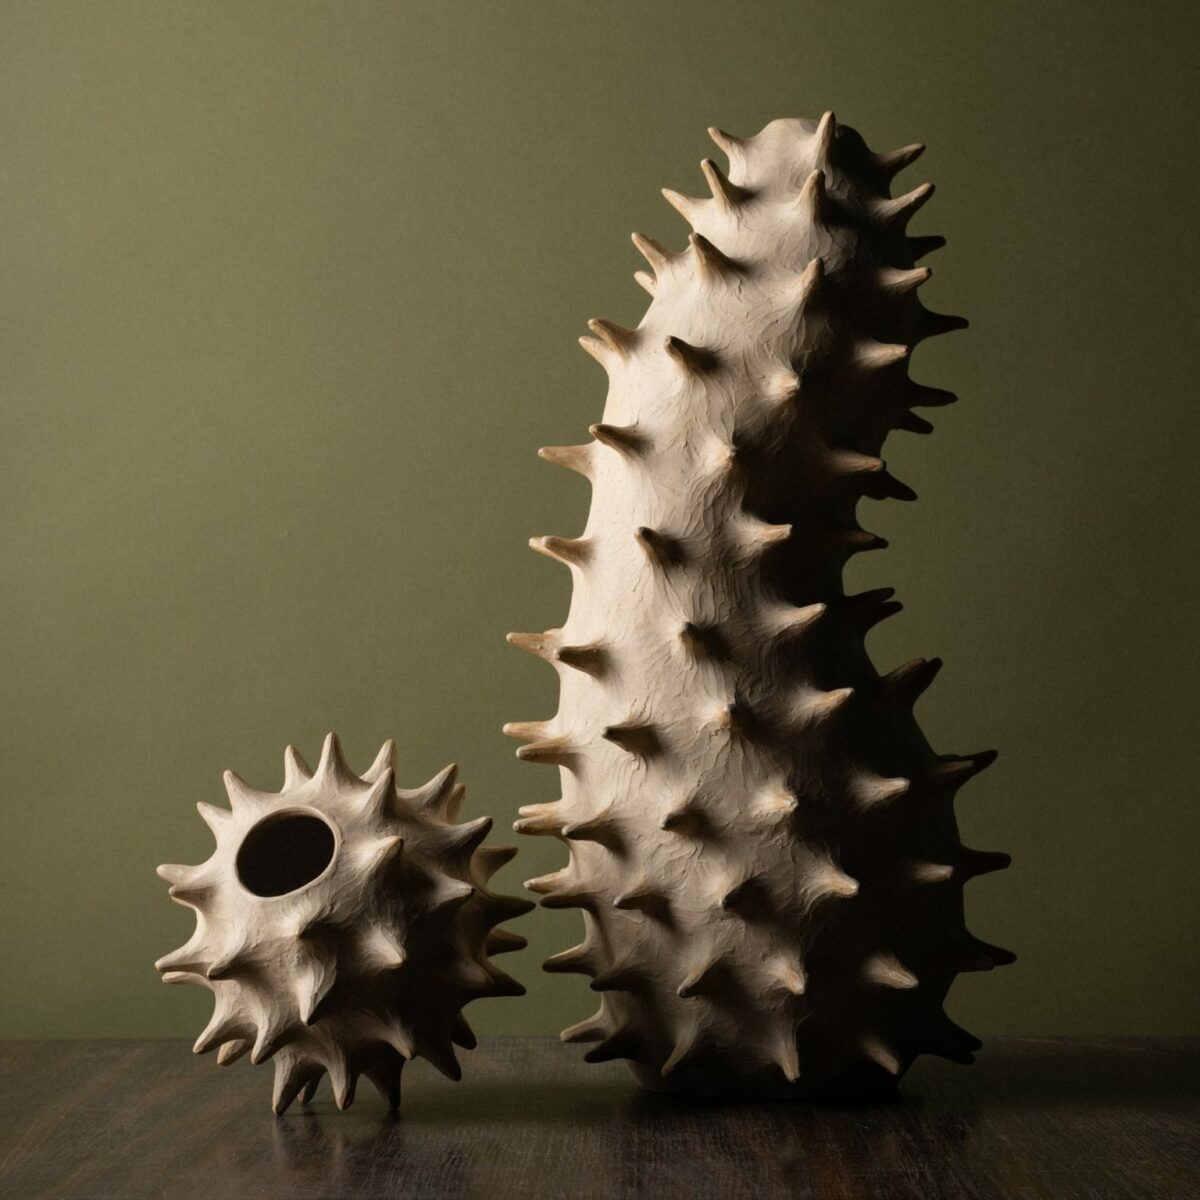 Amorphous ceramic vessels by Julie Bergeron